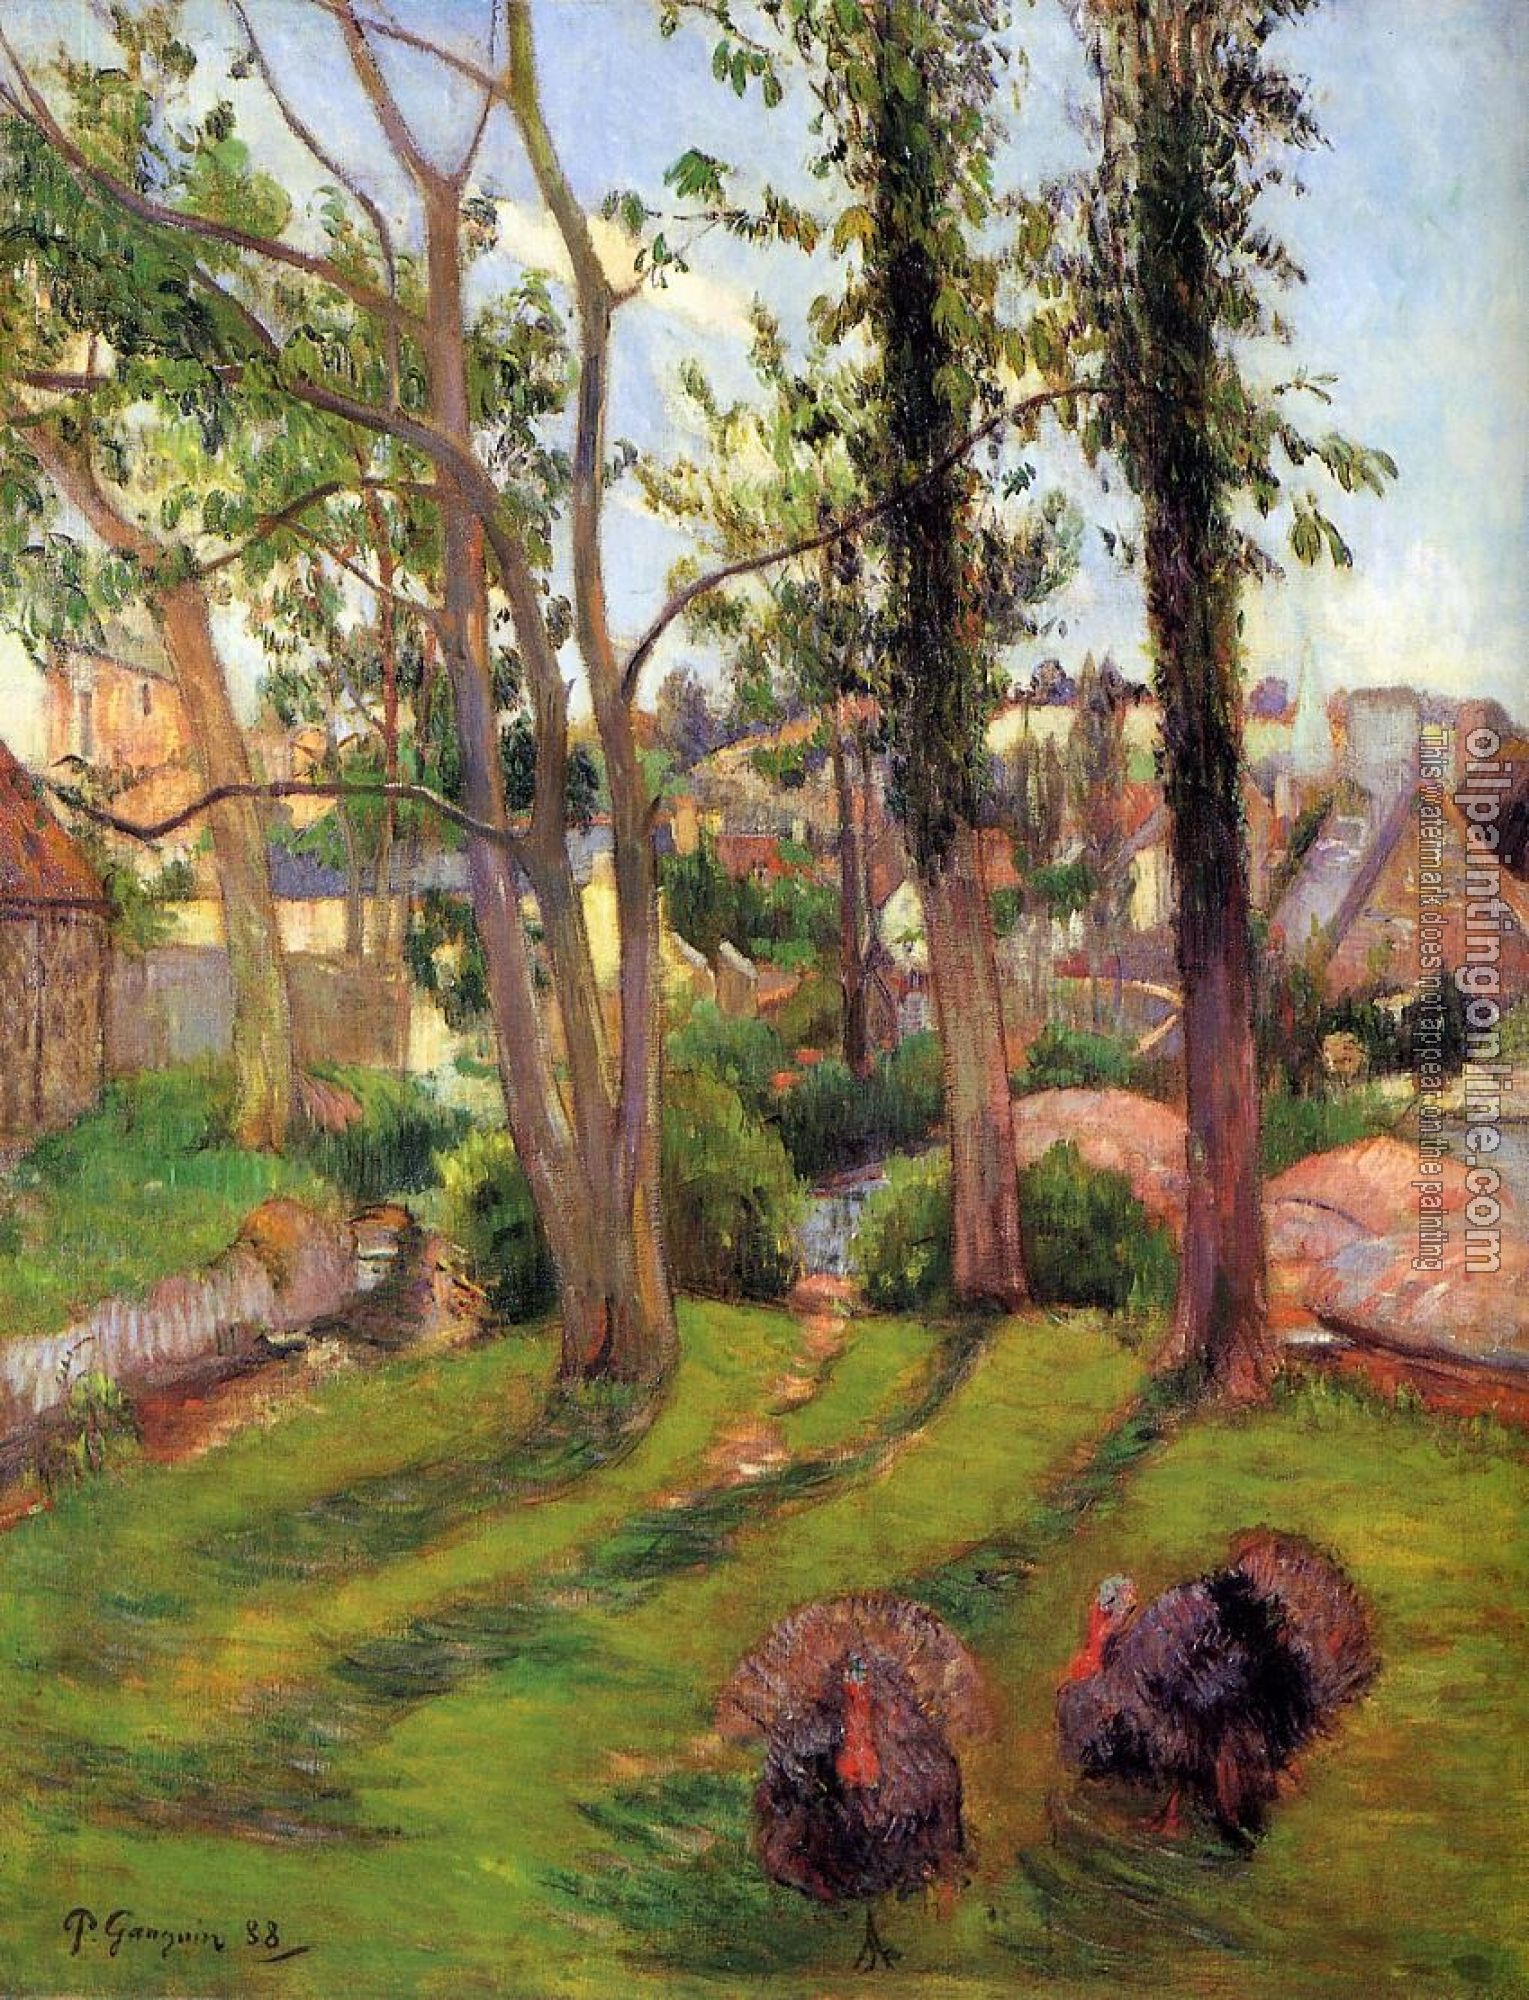 Gauguin, Paul - Turkeys